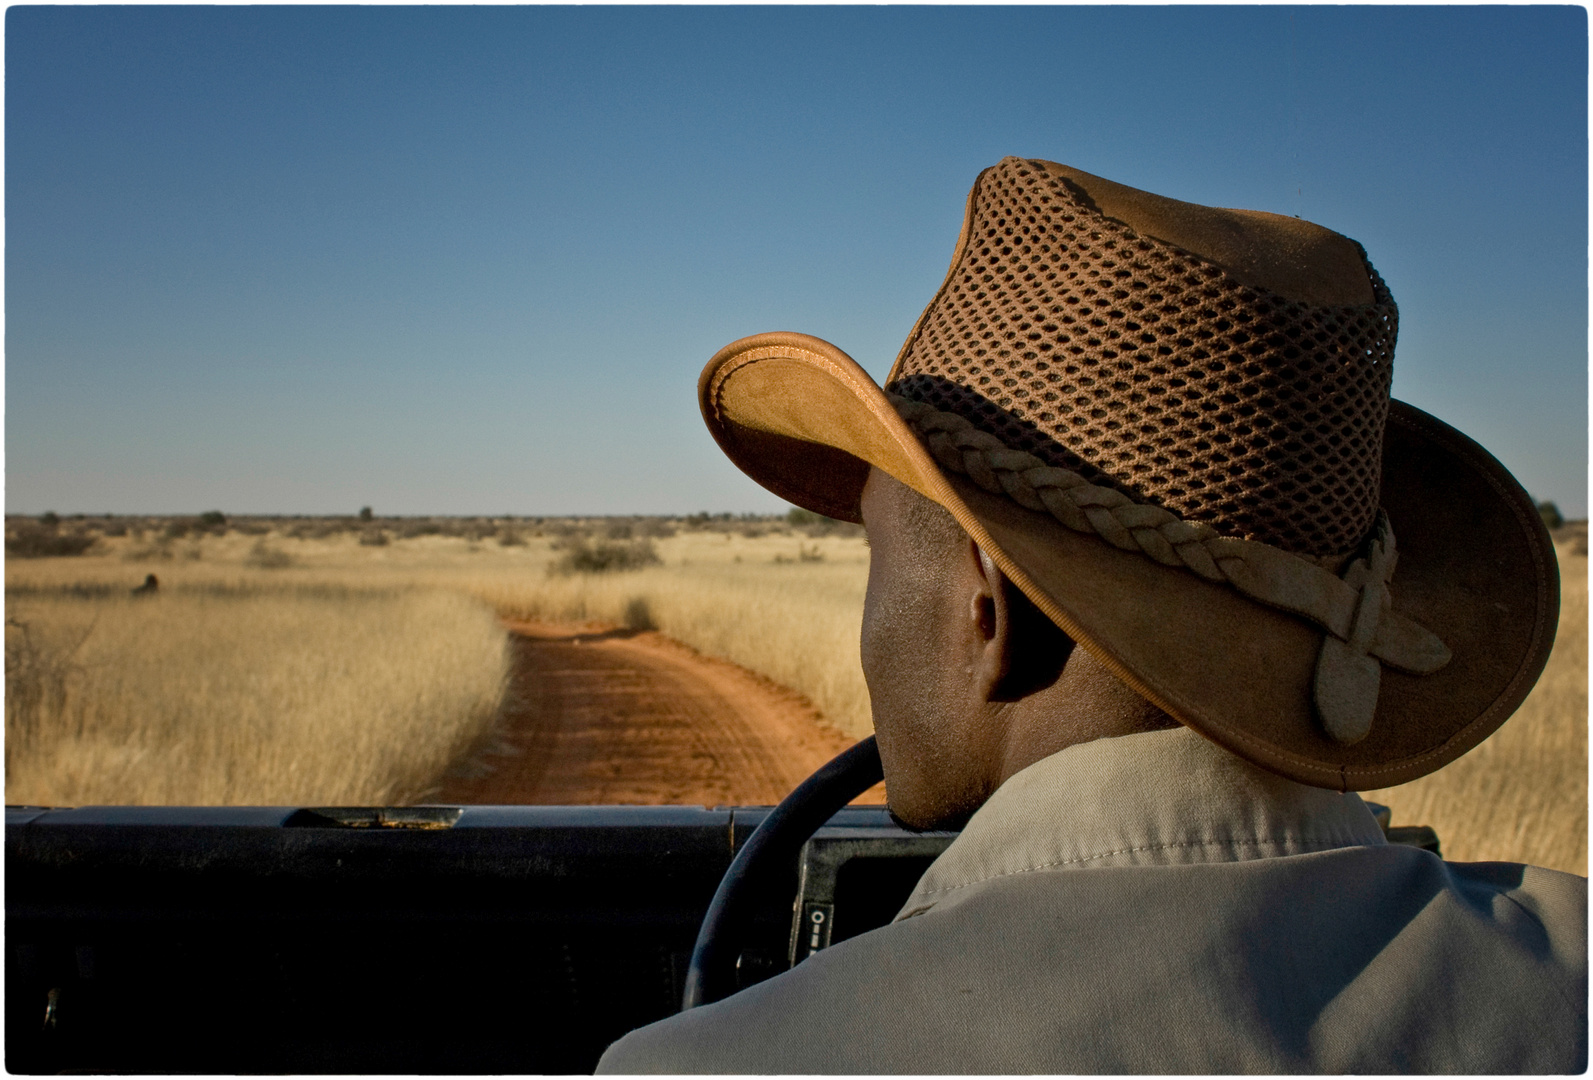 Pirschfahrt in die Kalahari